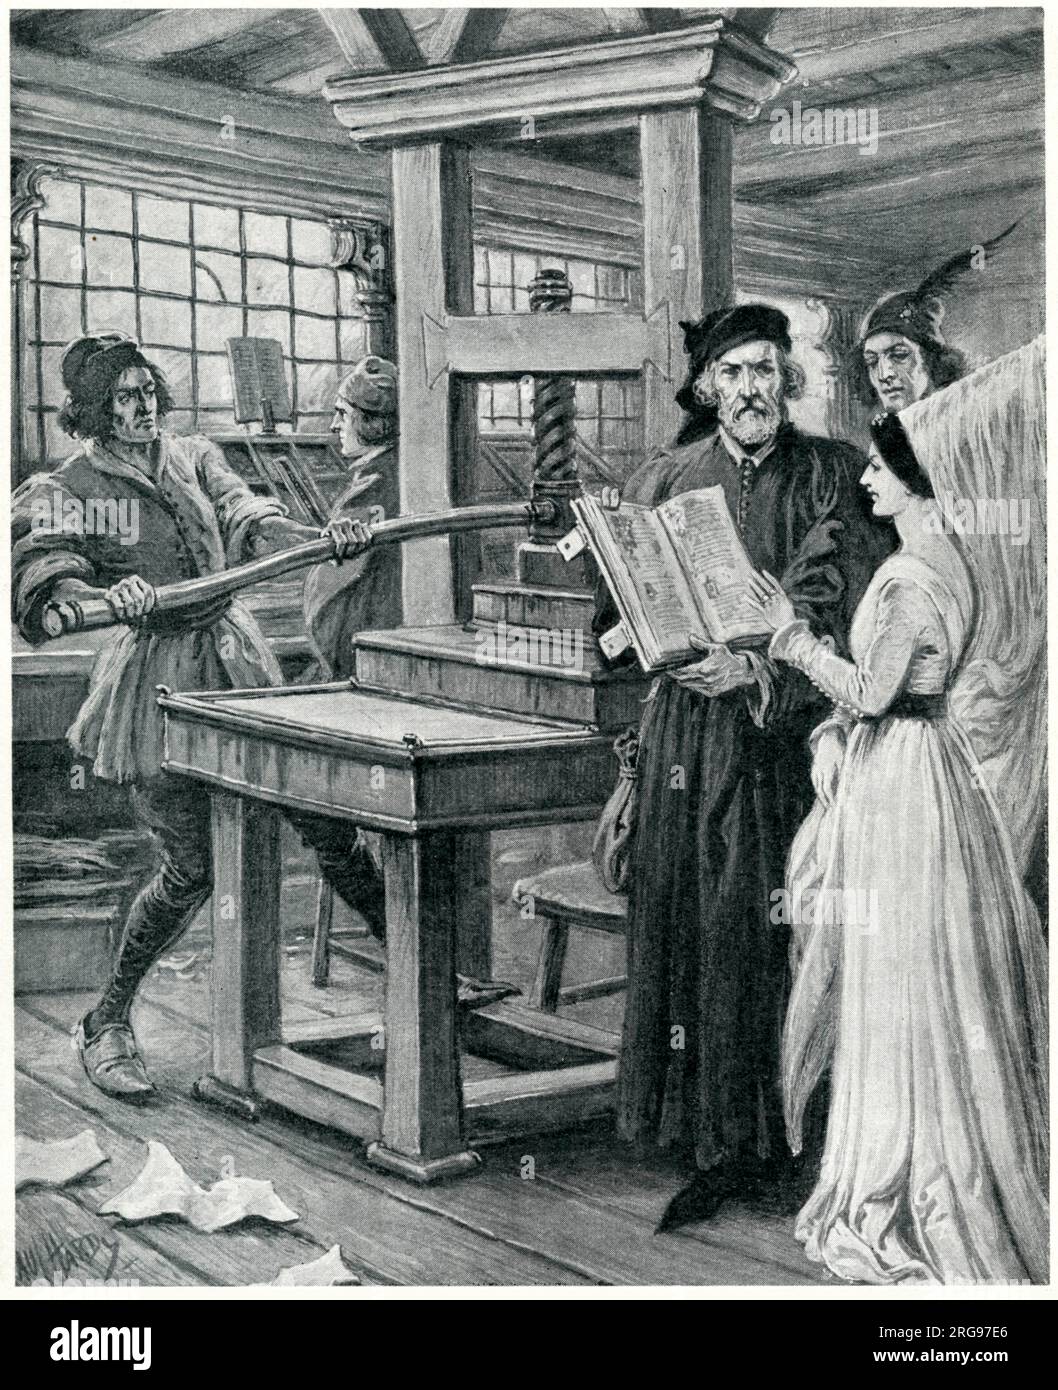 William Caxton und seine Druckerpresse Westminster, London. Seine Besucher hier sind wahrscheinlich König Edward IV. Und seine Königin Elizabeth Woodville. Stockfoto